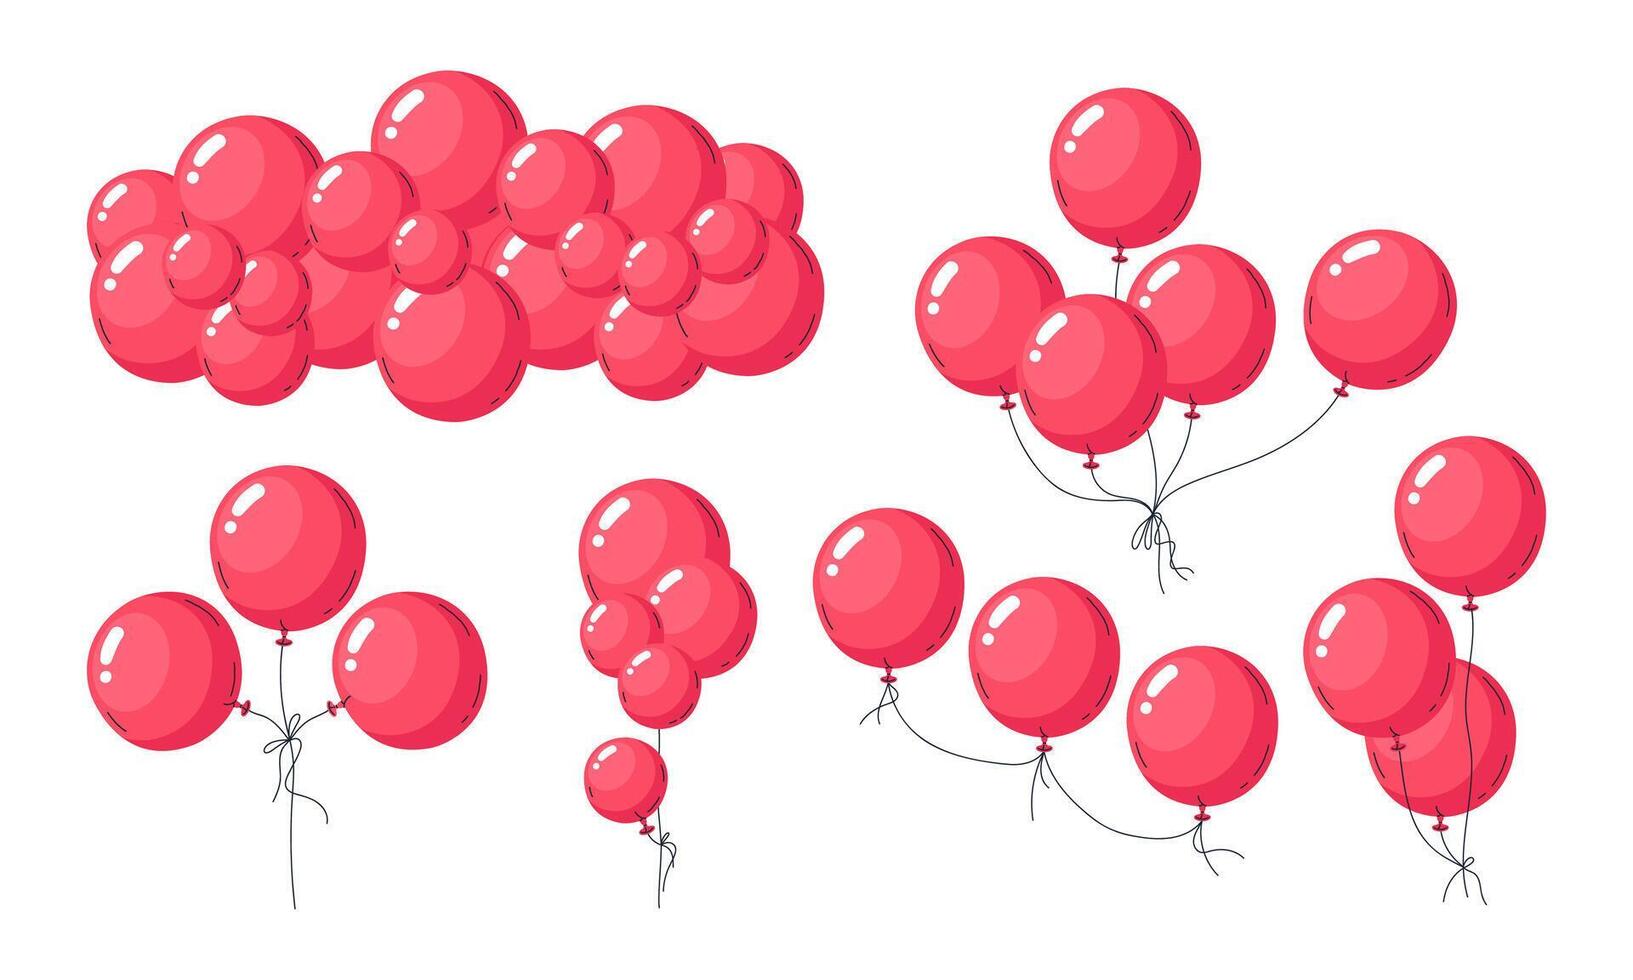 hélium rouge des ballons. flottant ballon grappes, écarlate air des ballons anniversaire fête décorations plat vecteur illustration ensemble. rouge brillant des ballons sur blanc